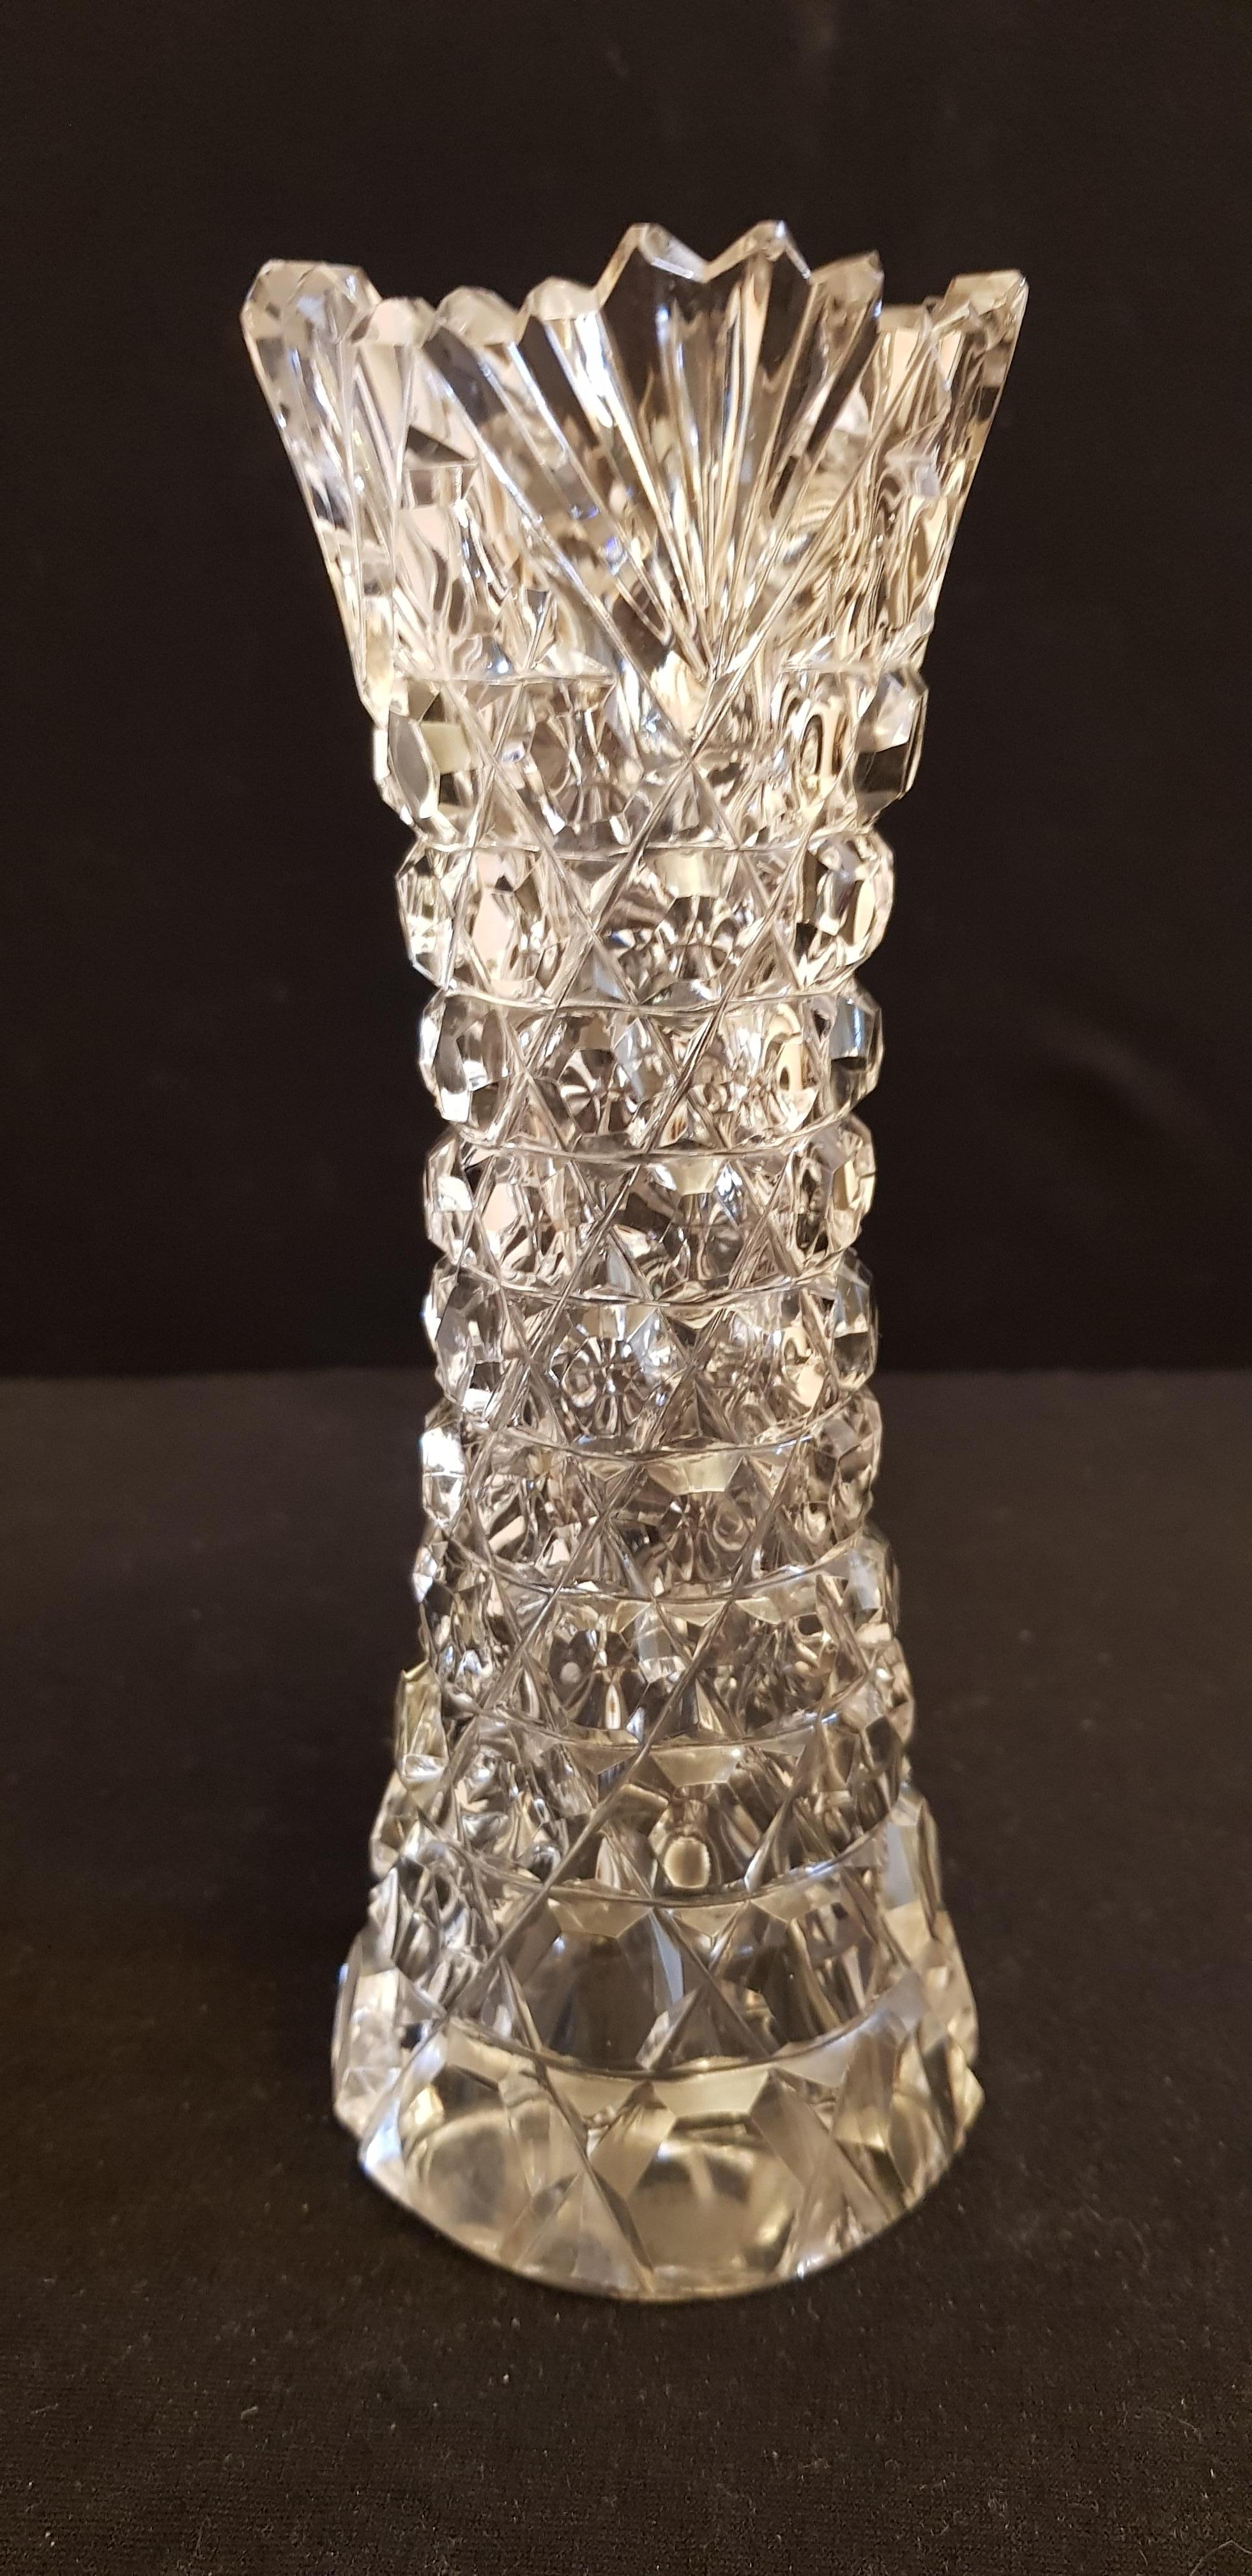 Beautiful antique rare F&C Osler brilliant cut crystal vase, years 1840-1920 made in Birmingham, UK brilliant condition.